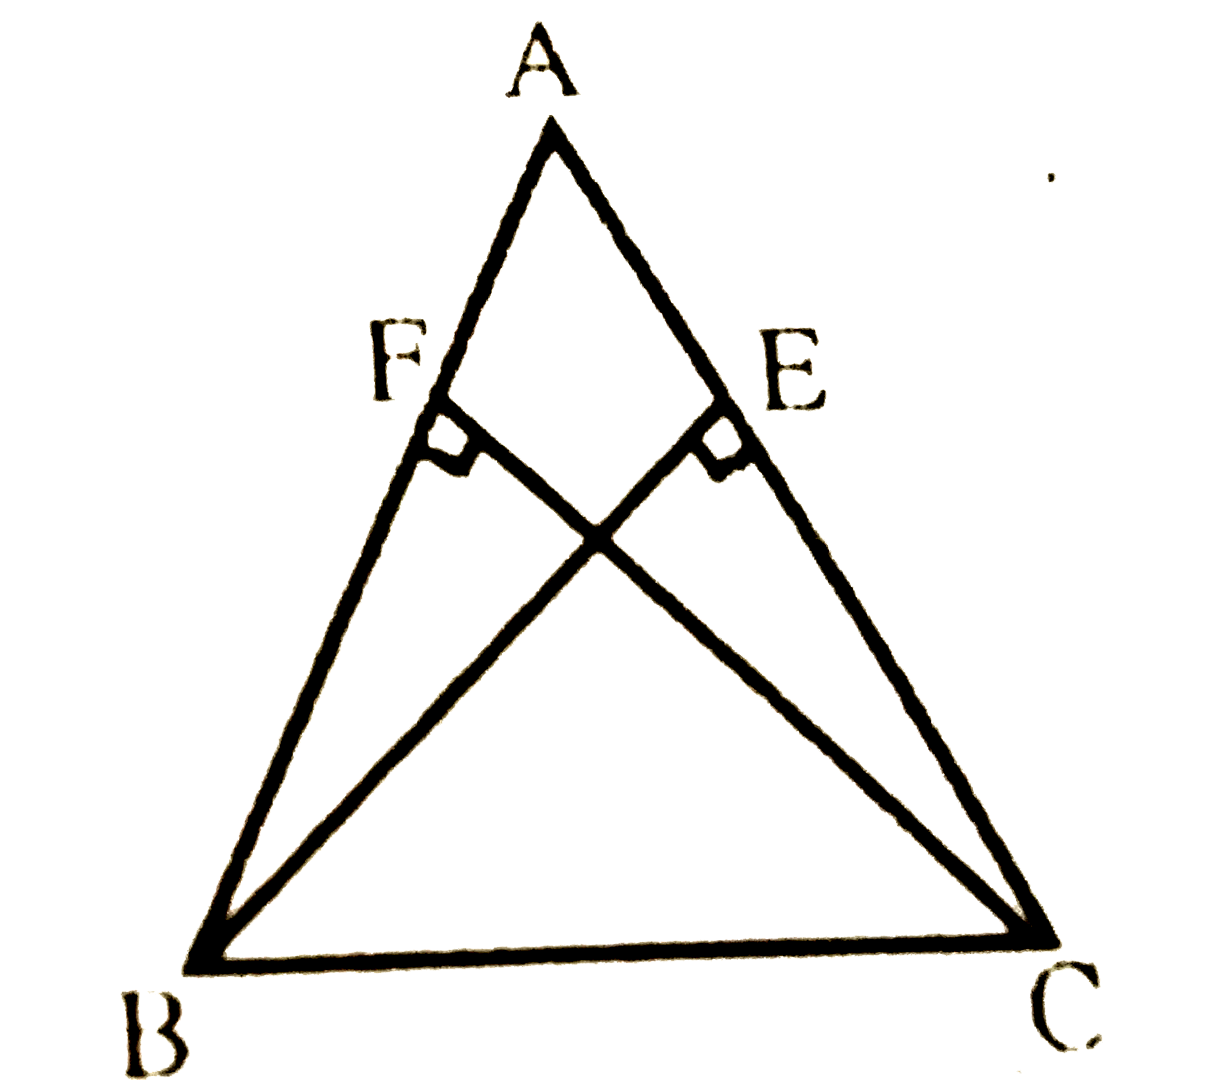 ABC एक समद्विबाहु त्रिभुज है, जिसमें बराबर भुजाओं AC और AB पर क्रमश: शीर्षलम्ब BE और CF खींचे गए हैं (देखिए आकृति) | दर्शाइए कि ये शीर्षलम्ब बराबर हैं |